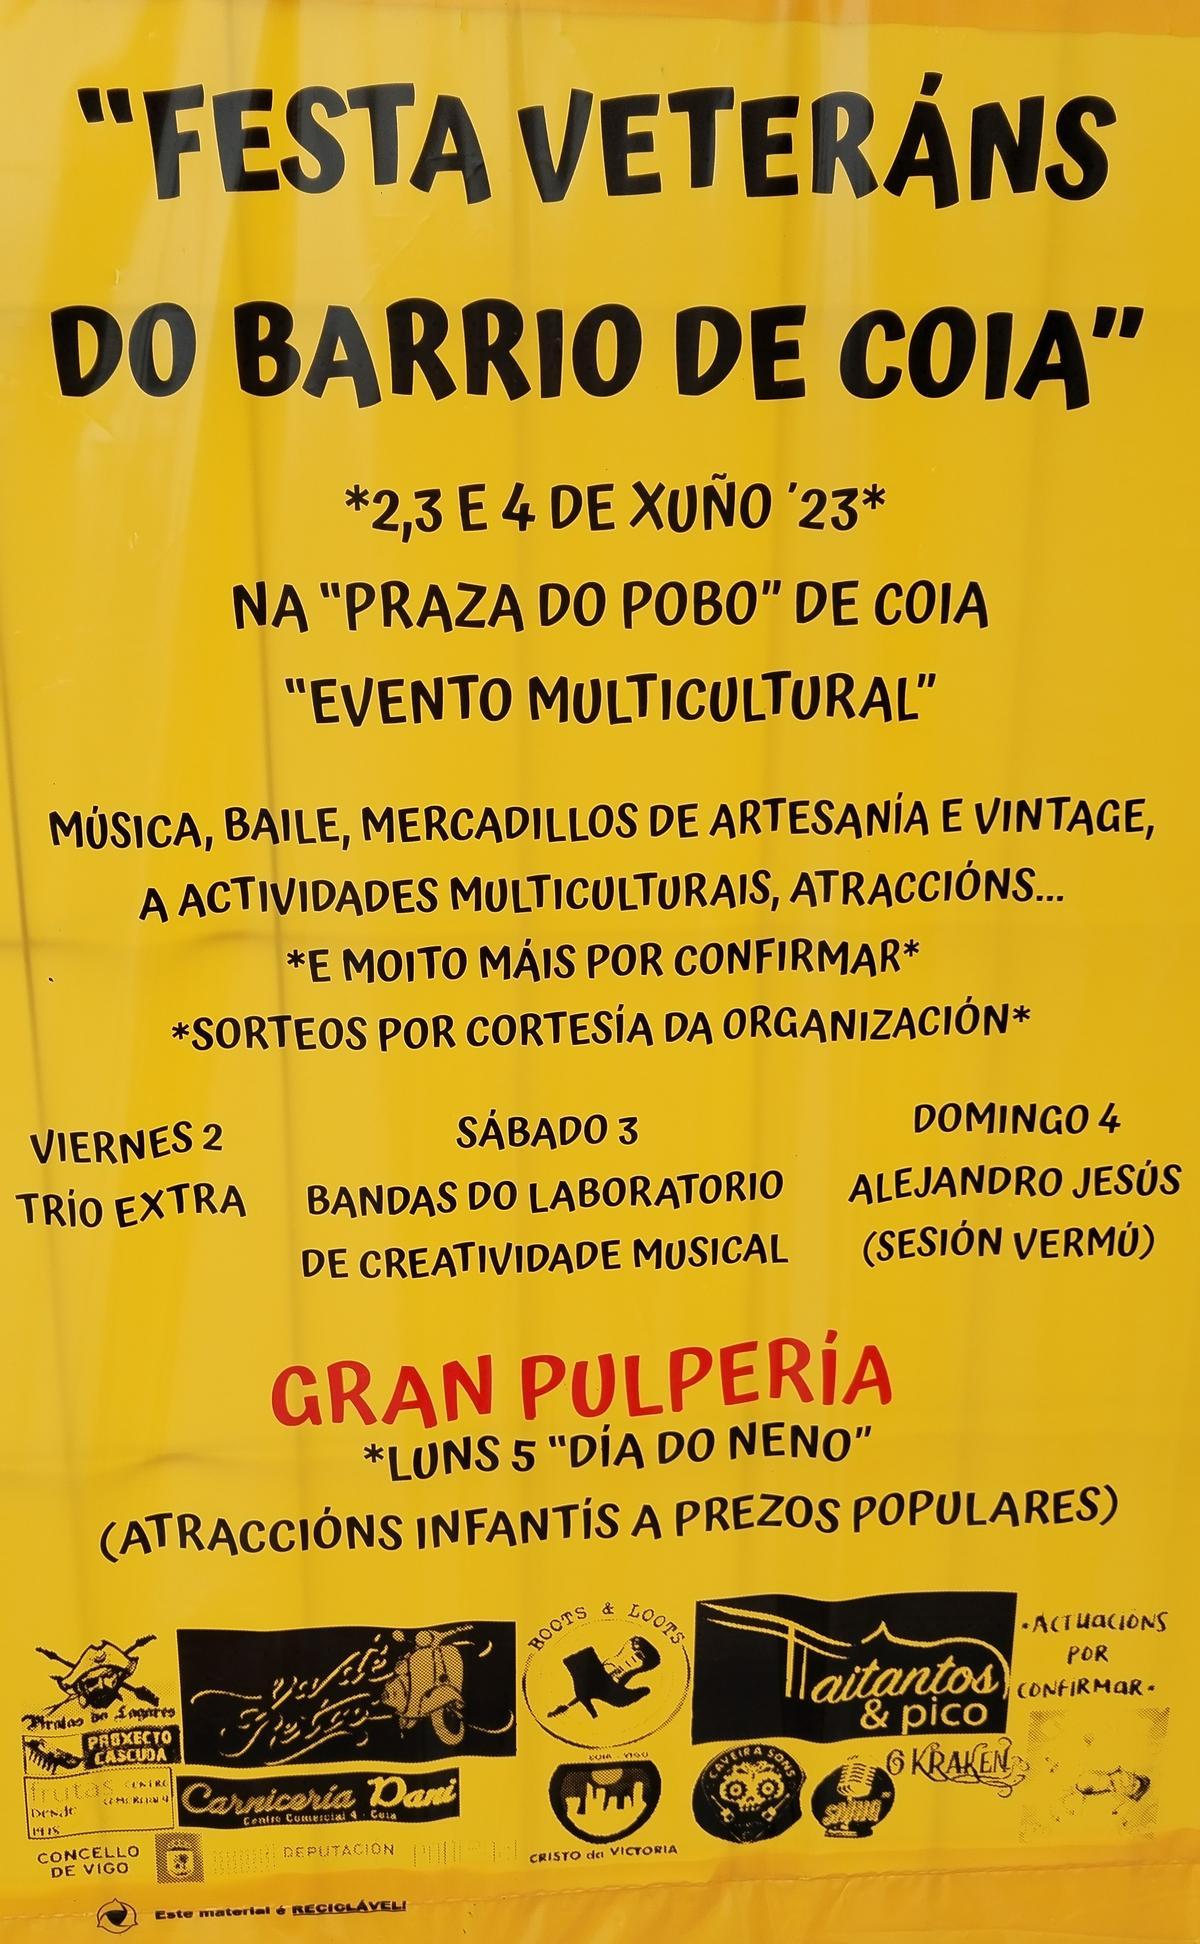 Cartel anunciador de la celebración en Coia.